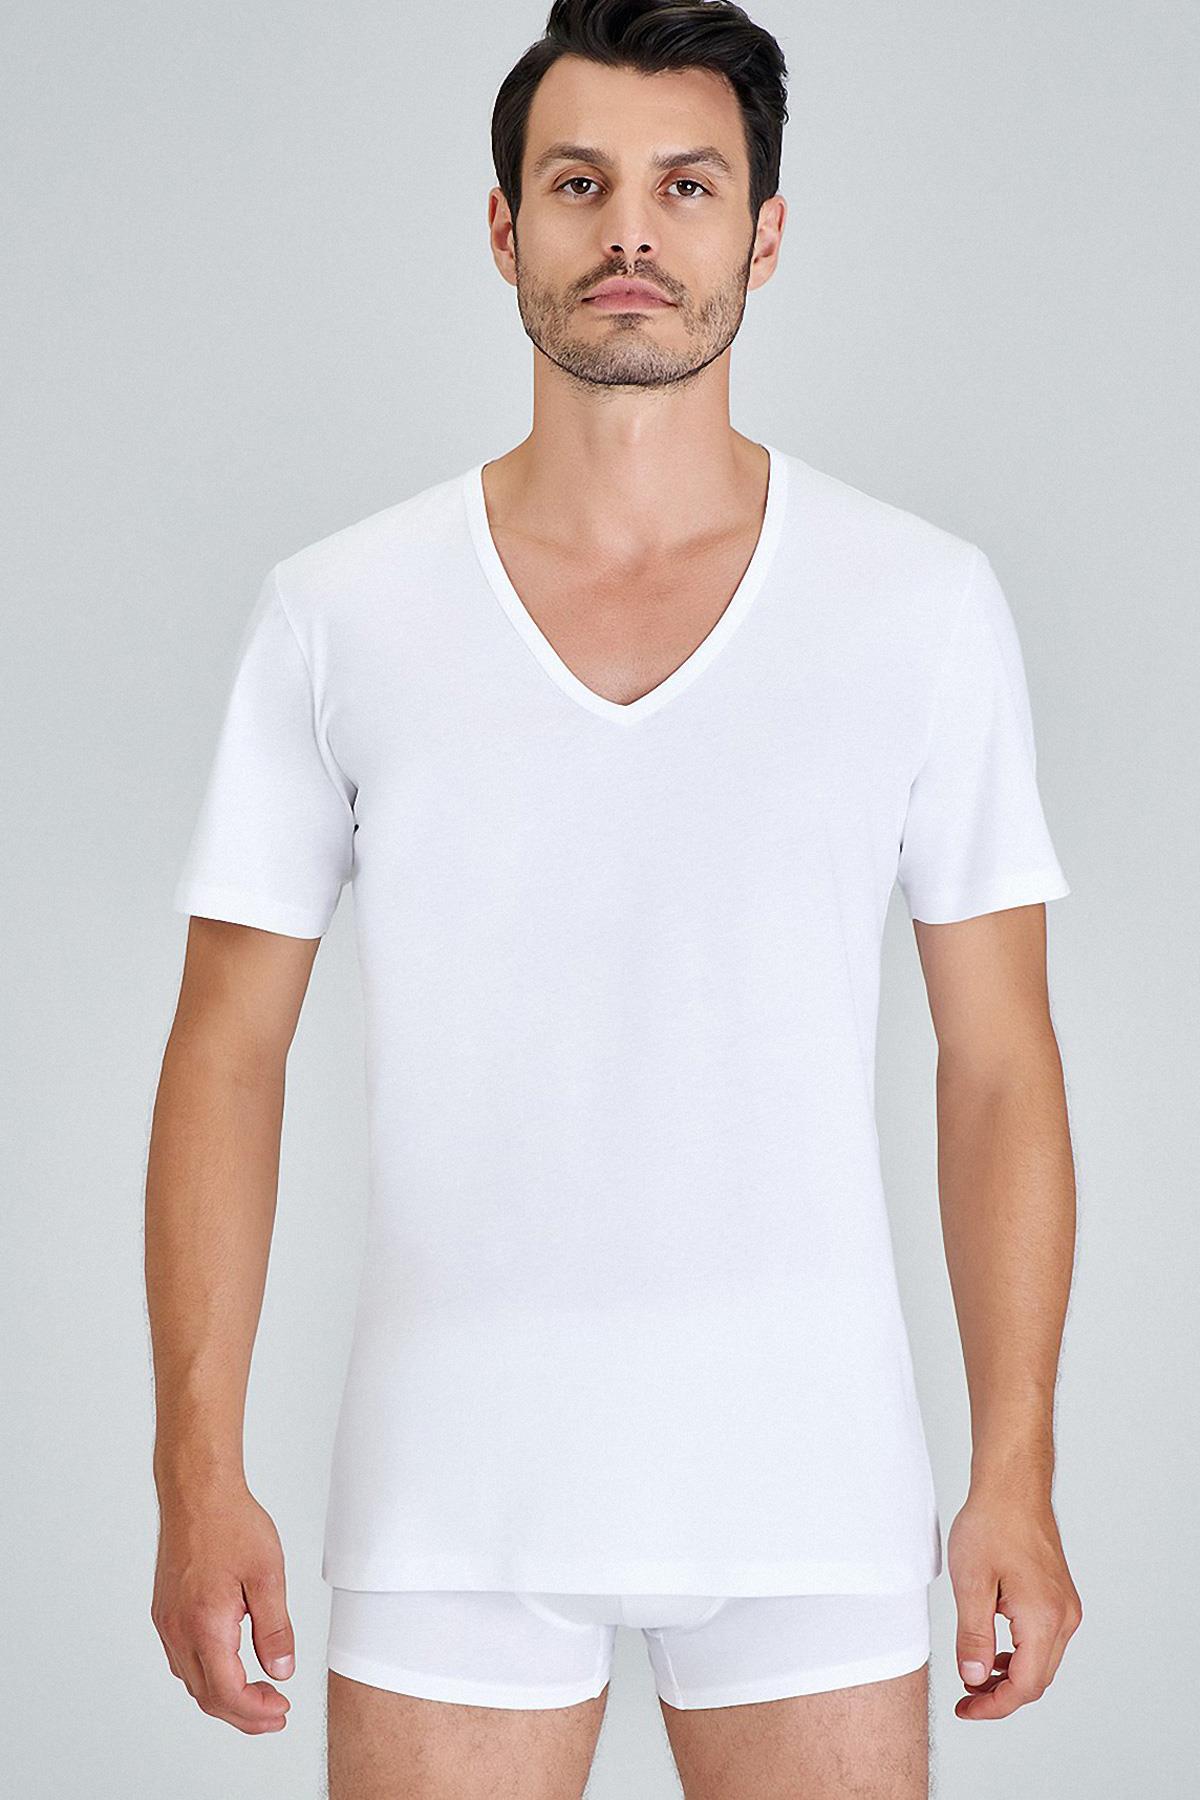 Kom Kısa Kol Koton Modal Erkek Enrıco 2Li V Yaka T-Shirt